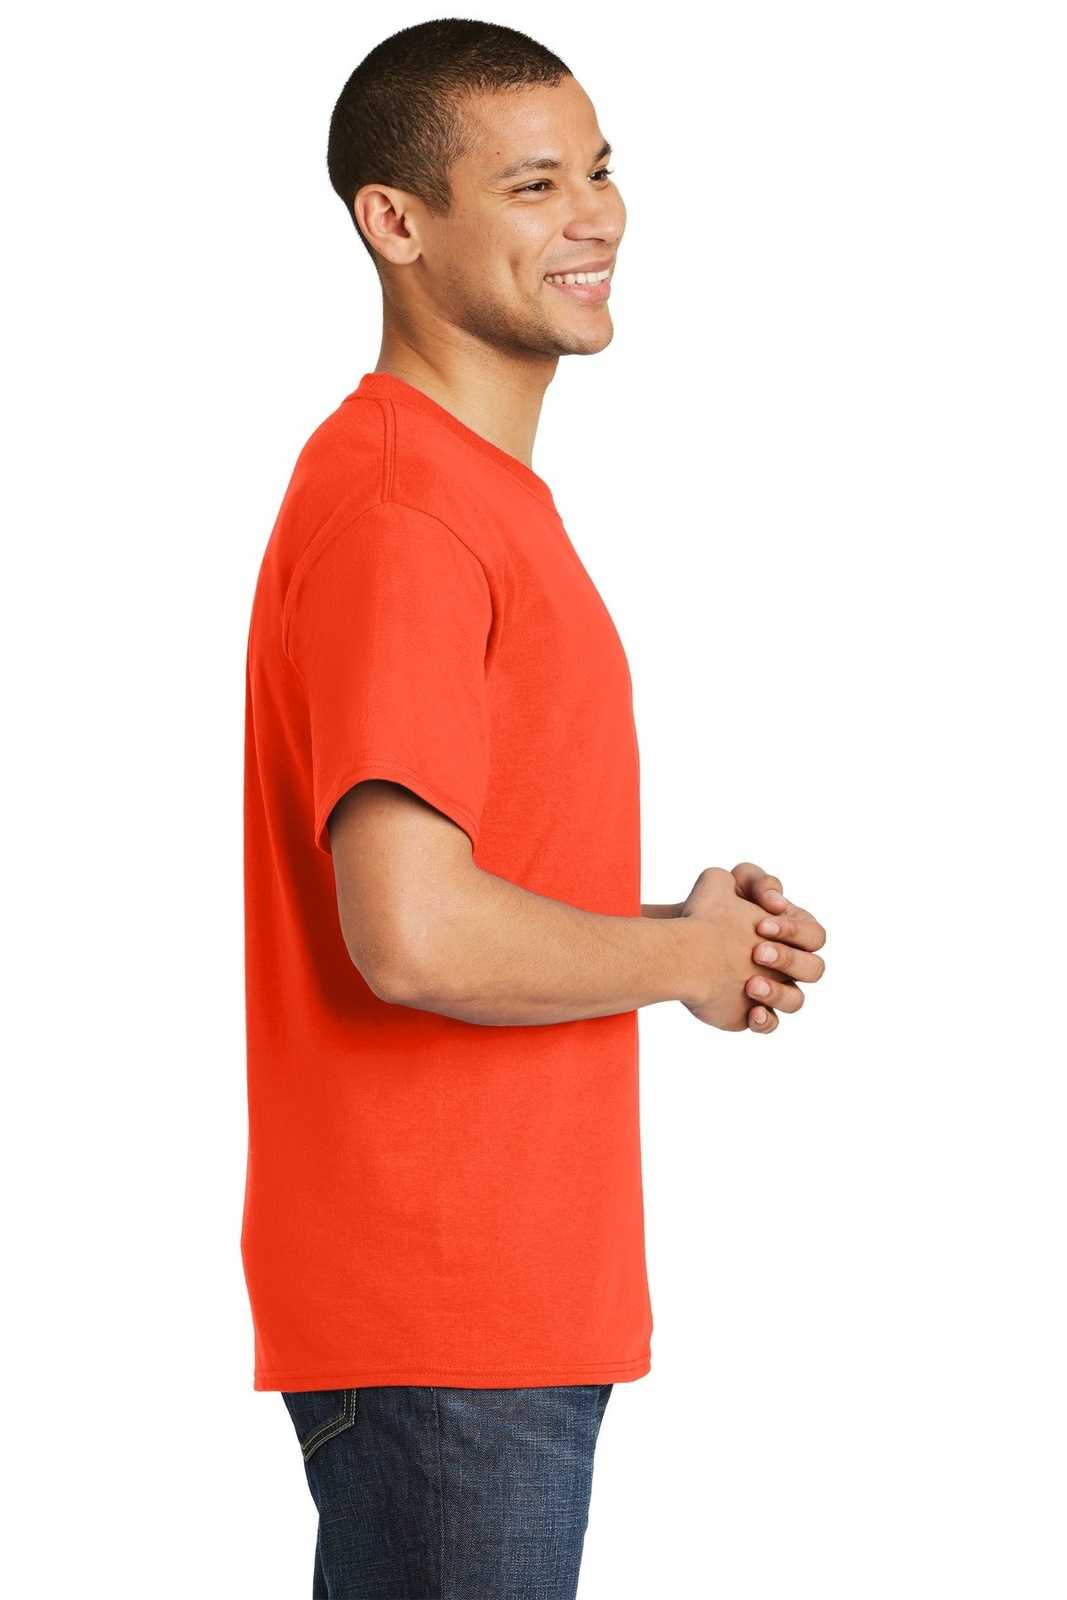 Hanes 5180 Beefy-T 100% Cotton T-Shirt - Orange - HIT a Double